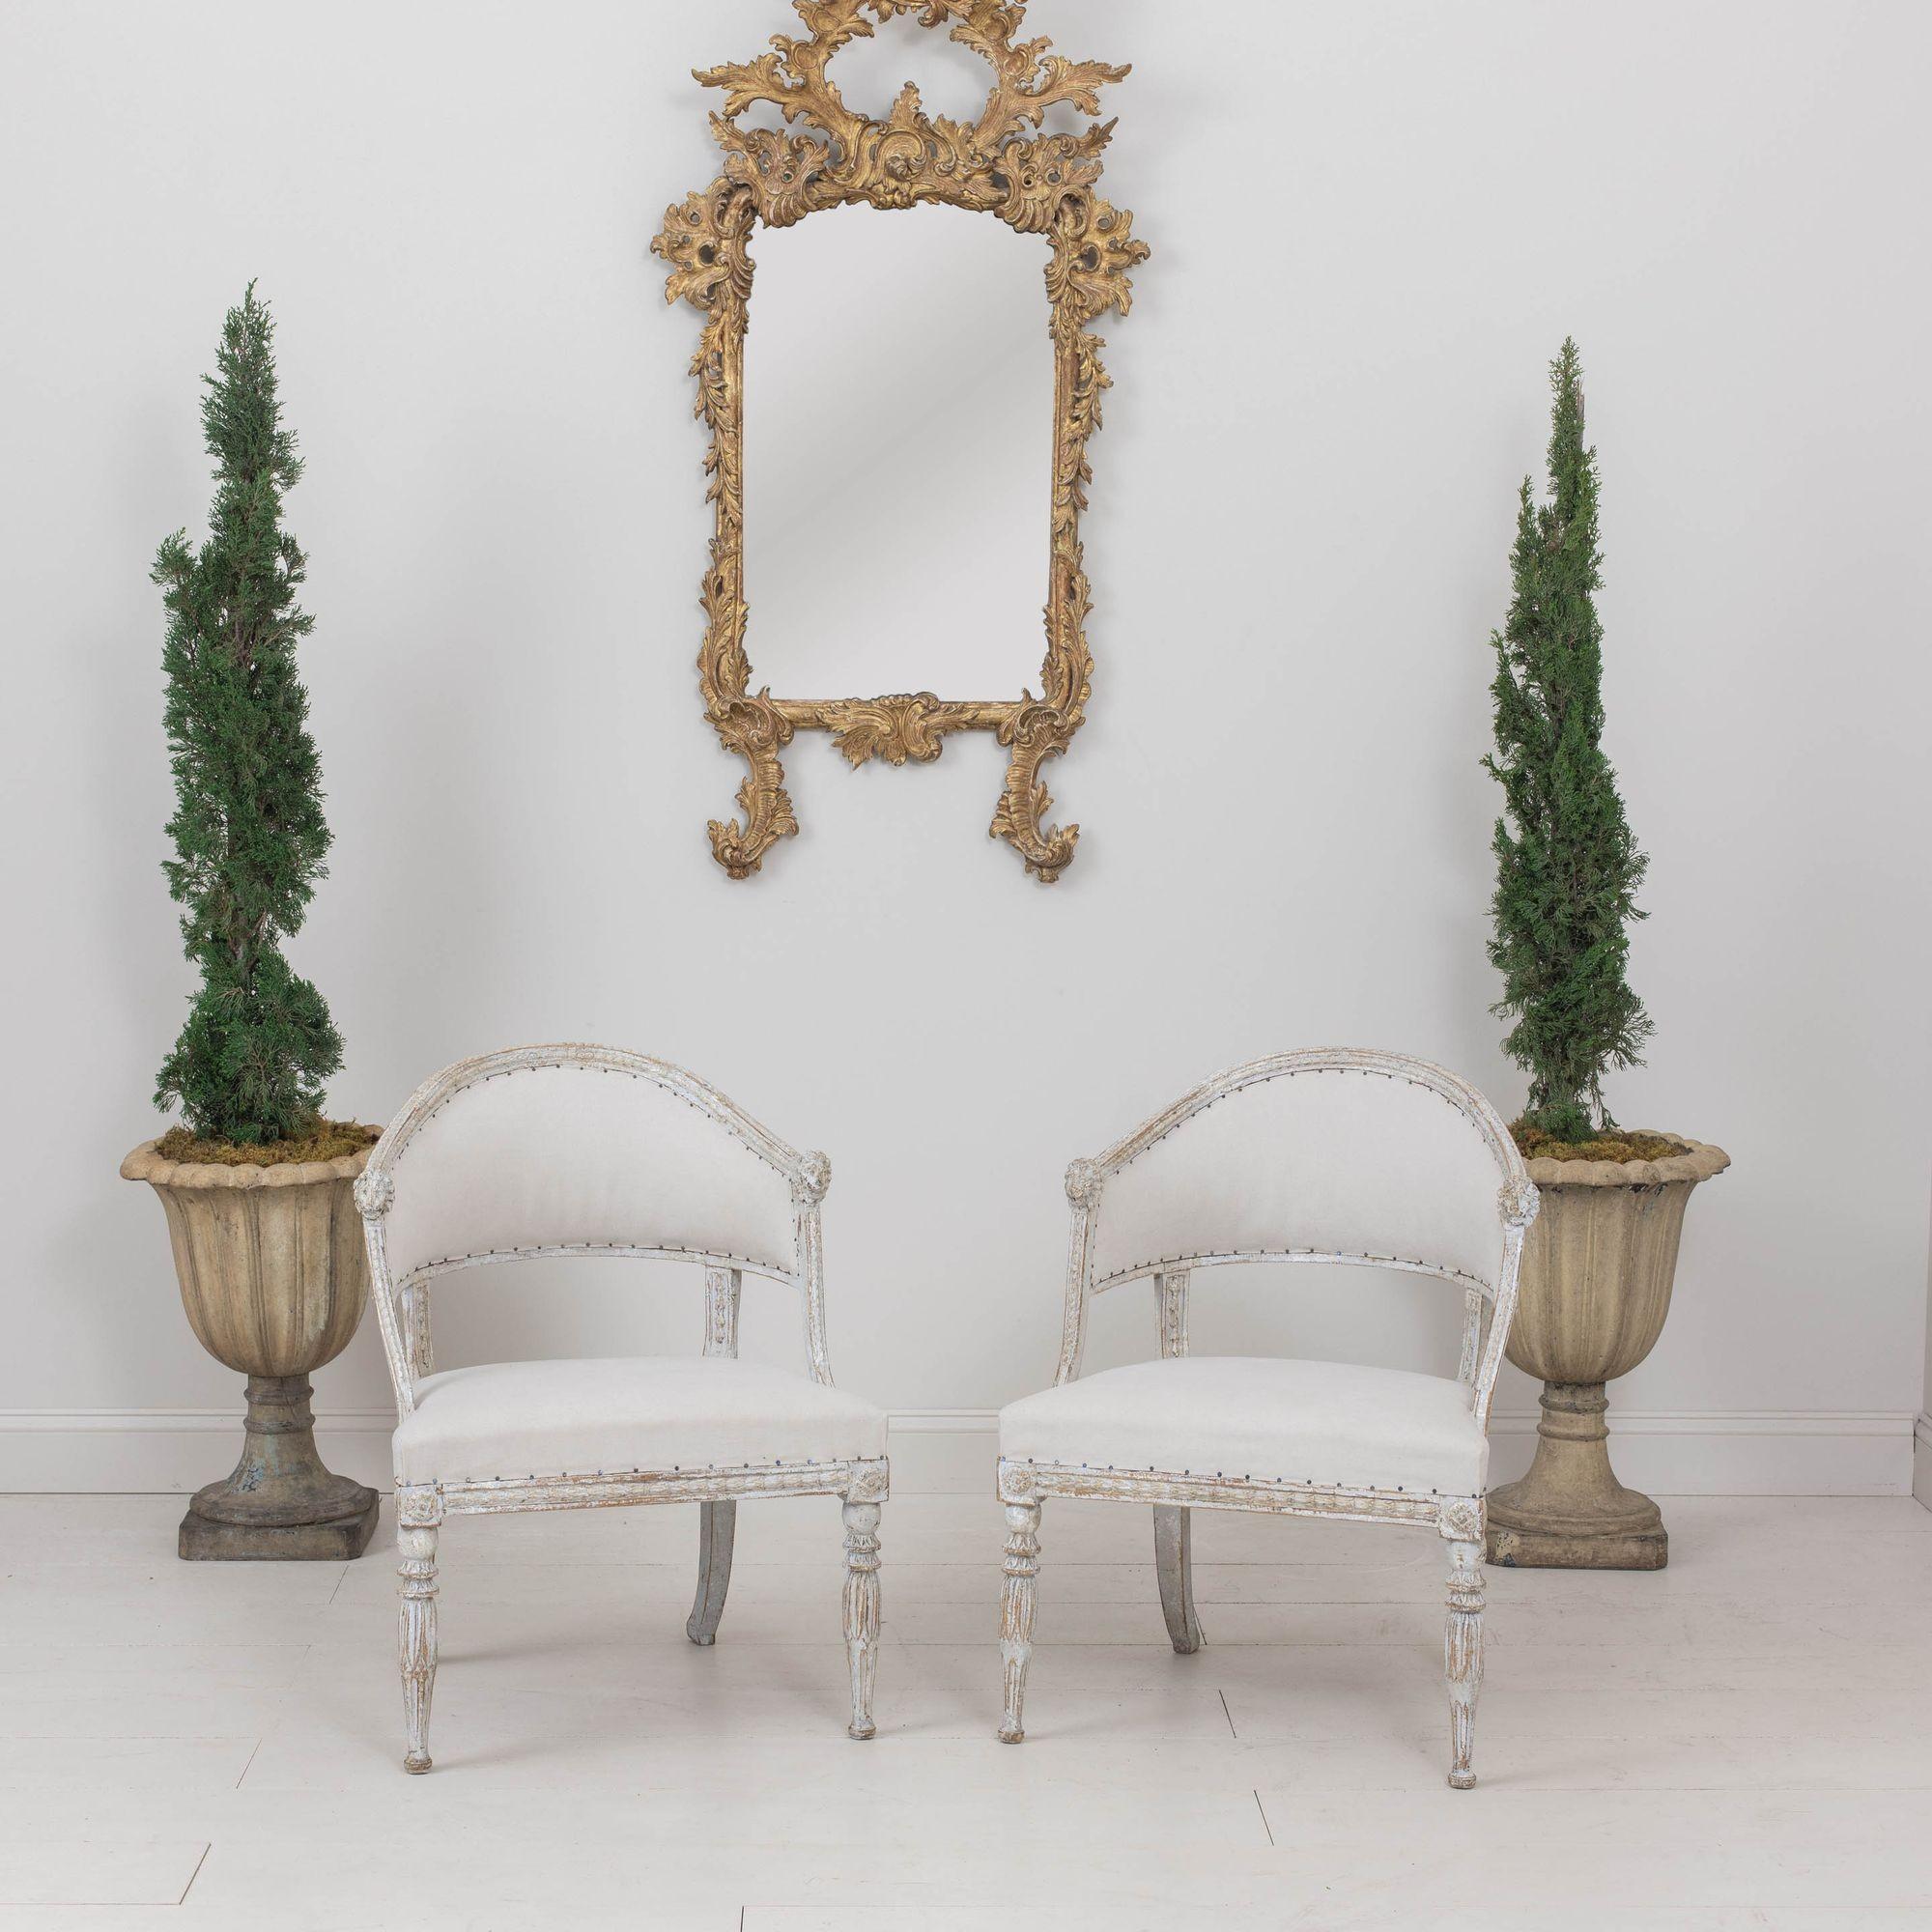 Ein Paar antike schwedische Sessel mit Fassrücken aus der Gustavianischen Periode, um 1810. Diese herrlichen Stühle haben eine geformte Rückenlehne mit geschnitzten Löwenköpfen. Der Rahmen weist geschnitzte Glockenblumen auf, die Vorderbeine sind